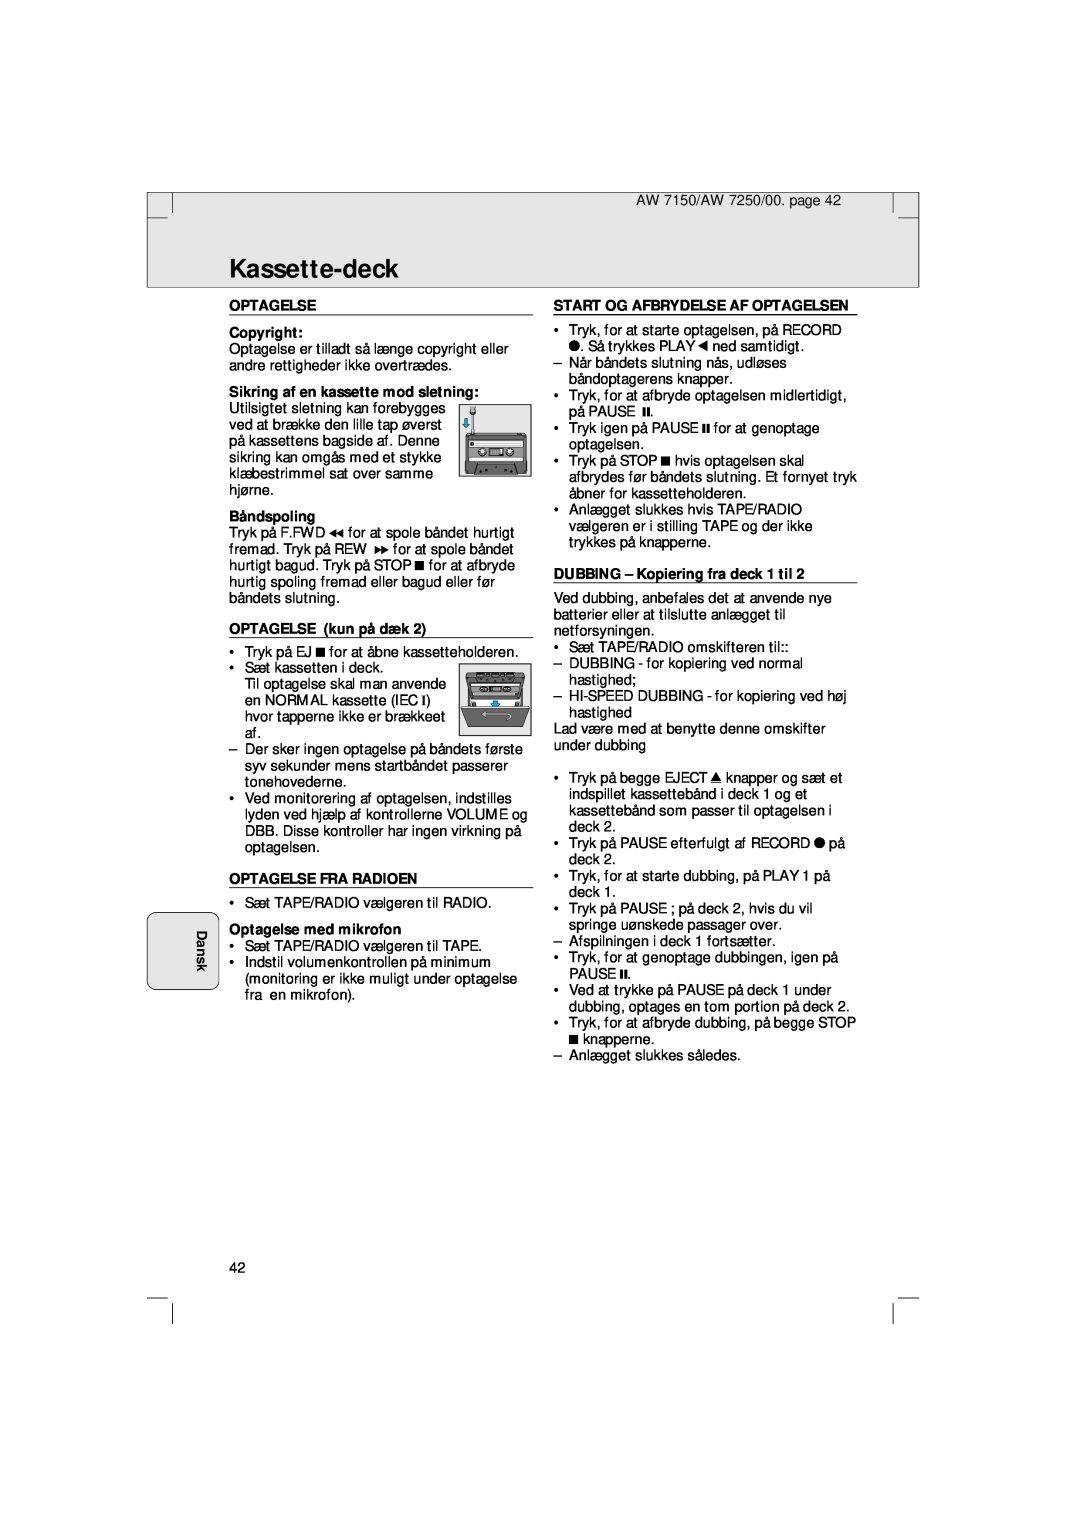 Philips AW 7150/04S manual Kassette-deck, Dansk, OPTAGELSE Copyright, Sikring af en kassette mod sletning, Båndspoling 